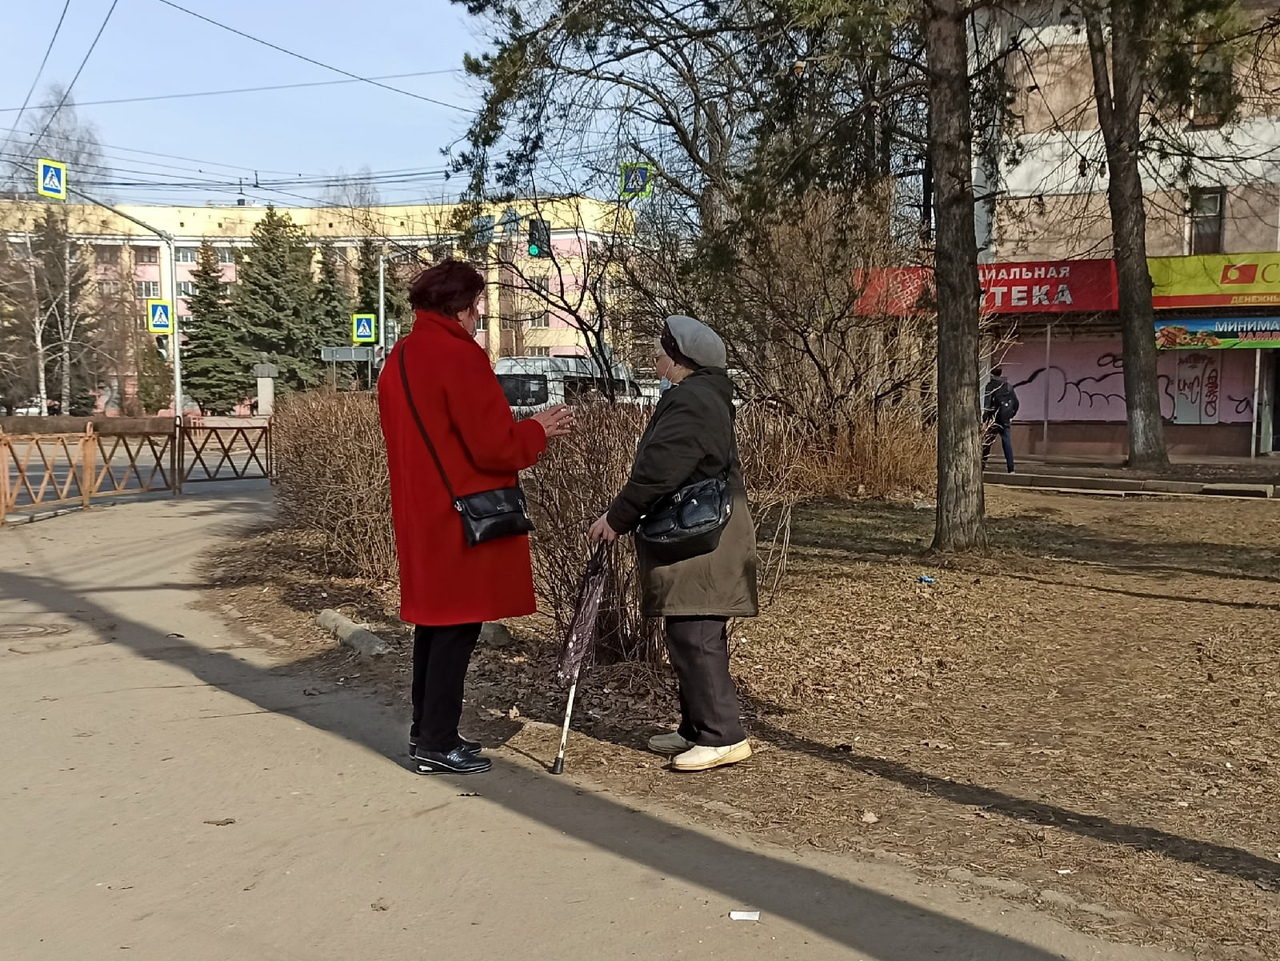 "Маску вместо хлеба?": скандал с безработными разразился на бирже труда в Ярославле